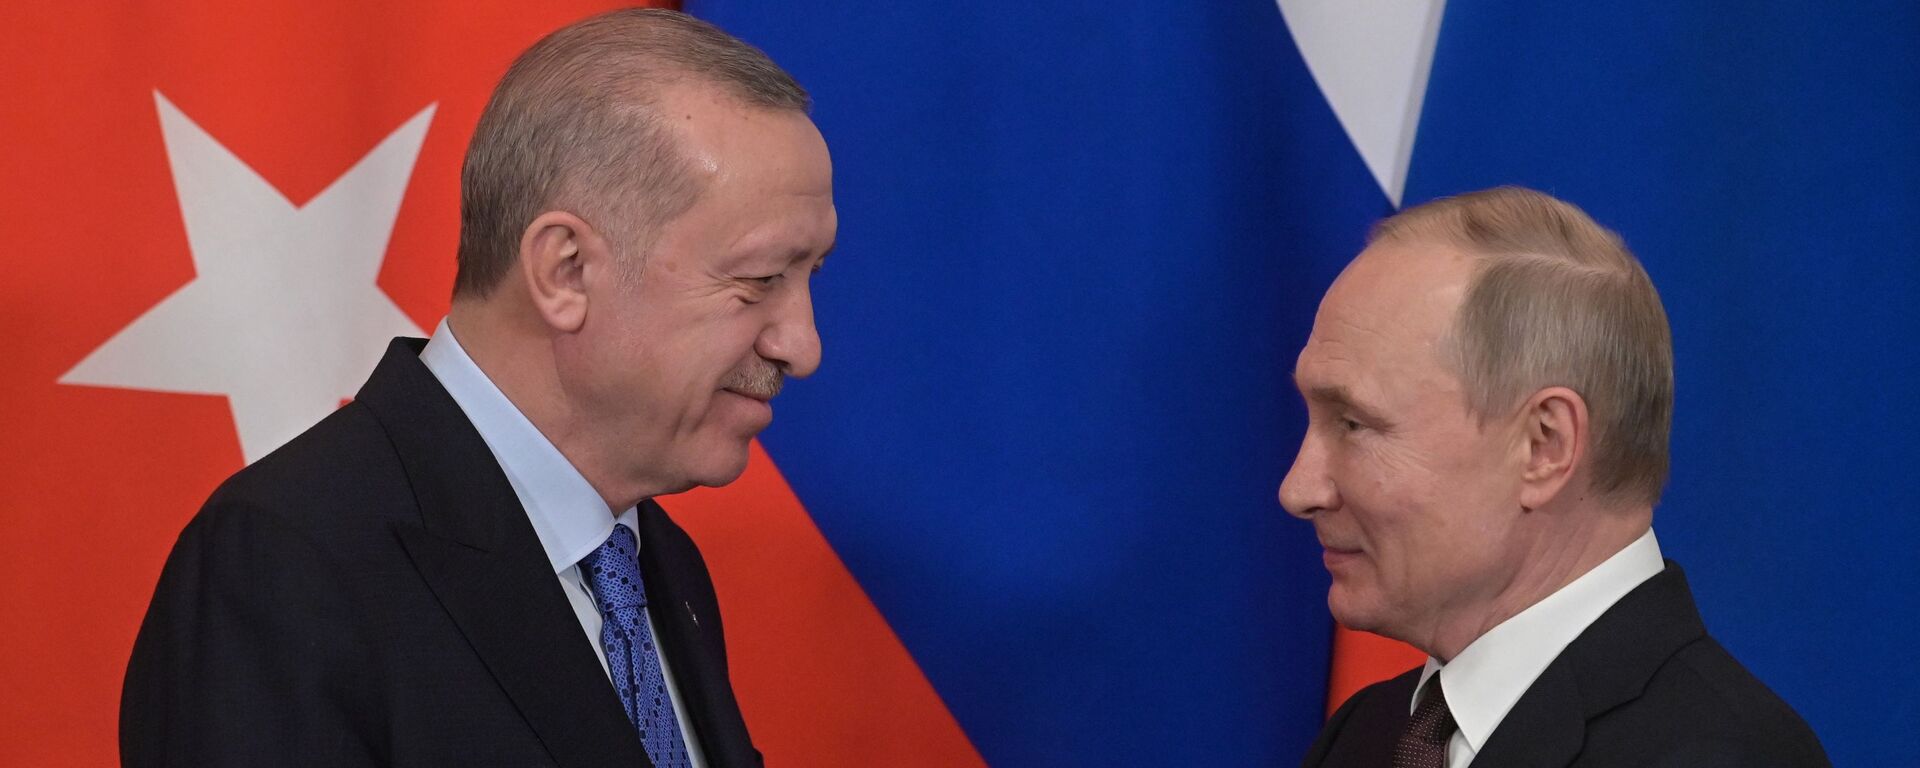 Президент РФ В. Путин встретился с президентом Турции Р. Эрдоганом - Sputnik Абхазия, 1920, 11.07.2022